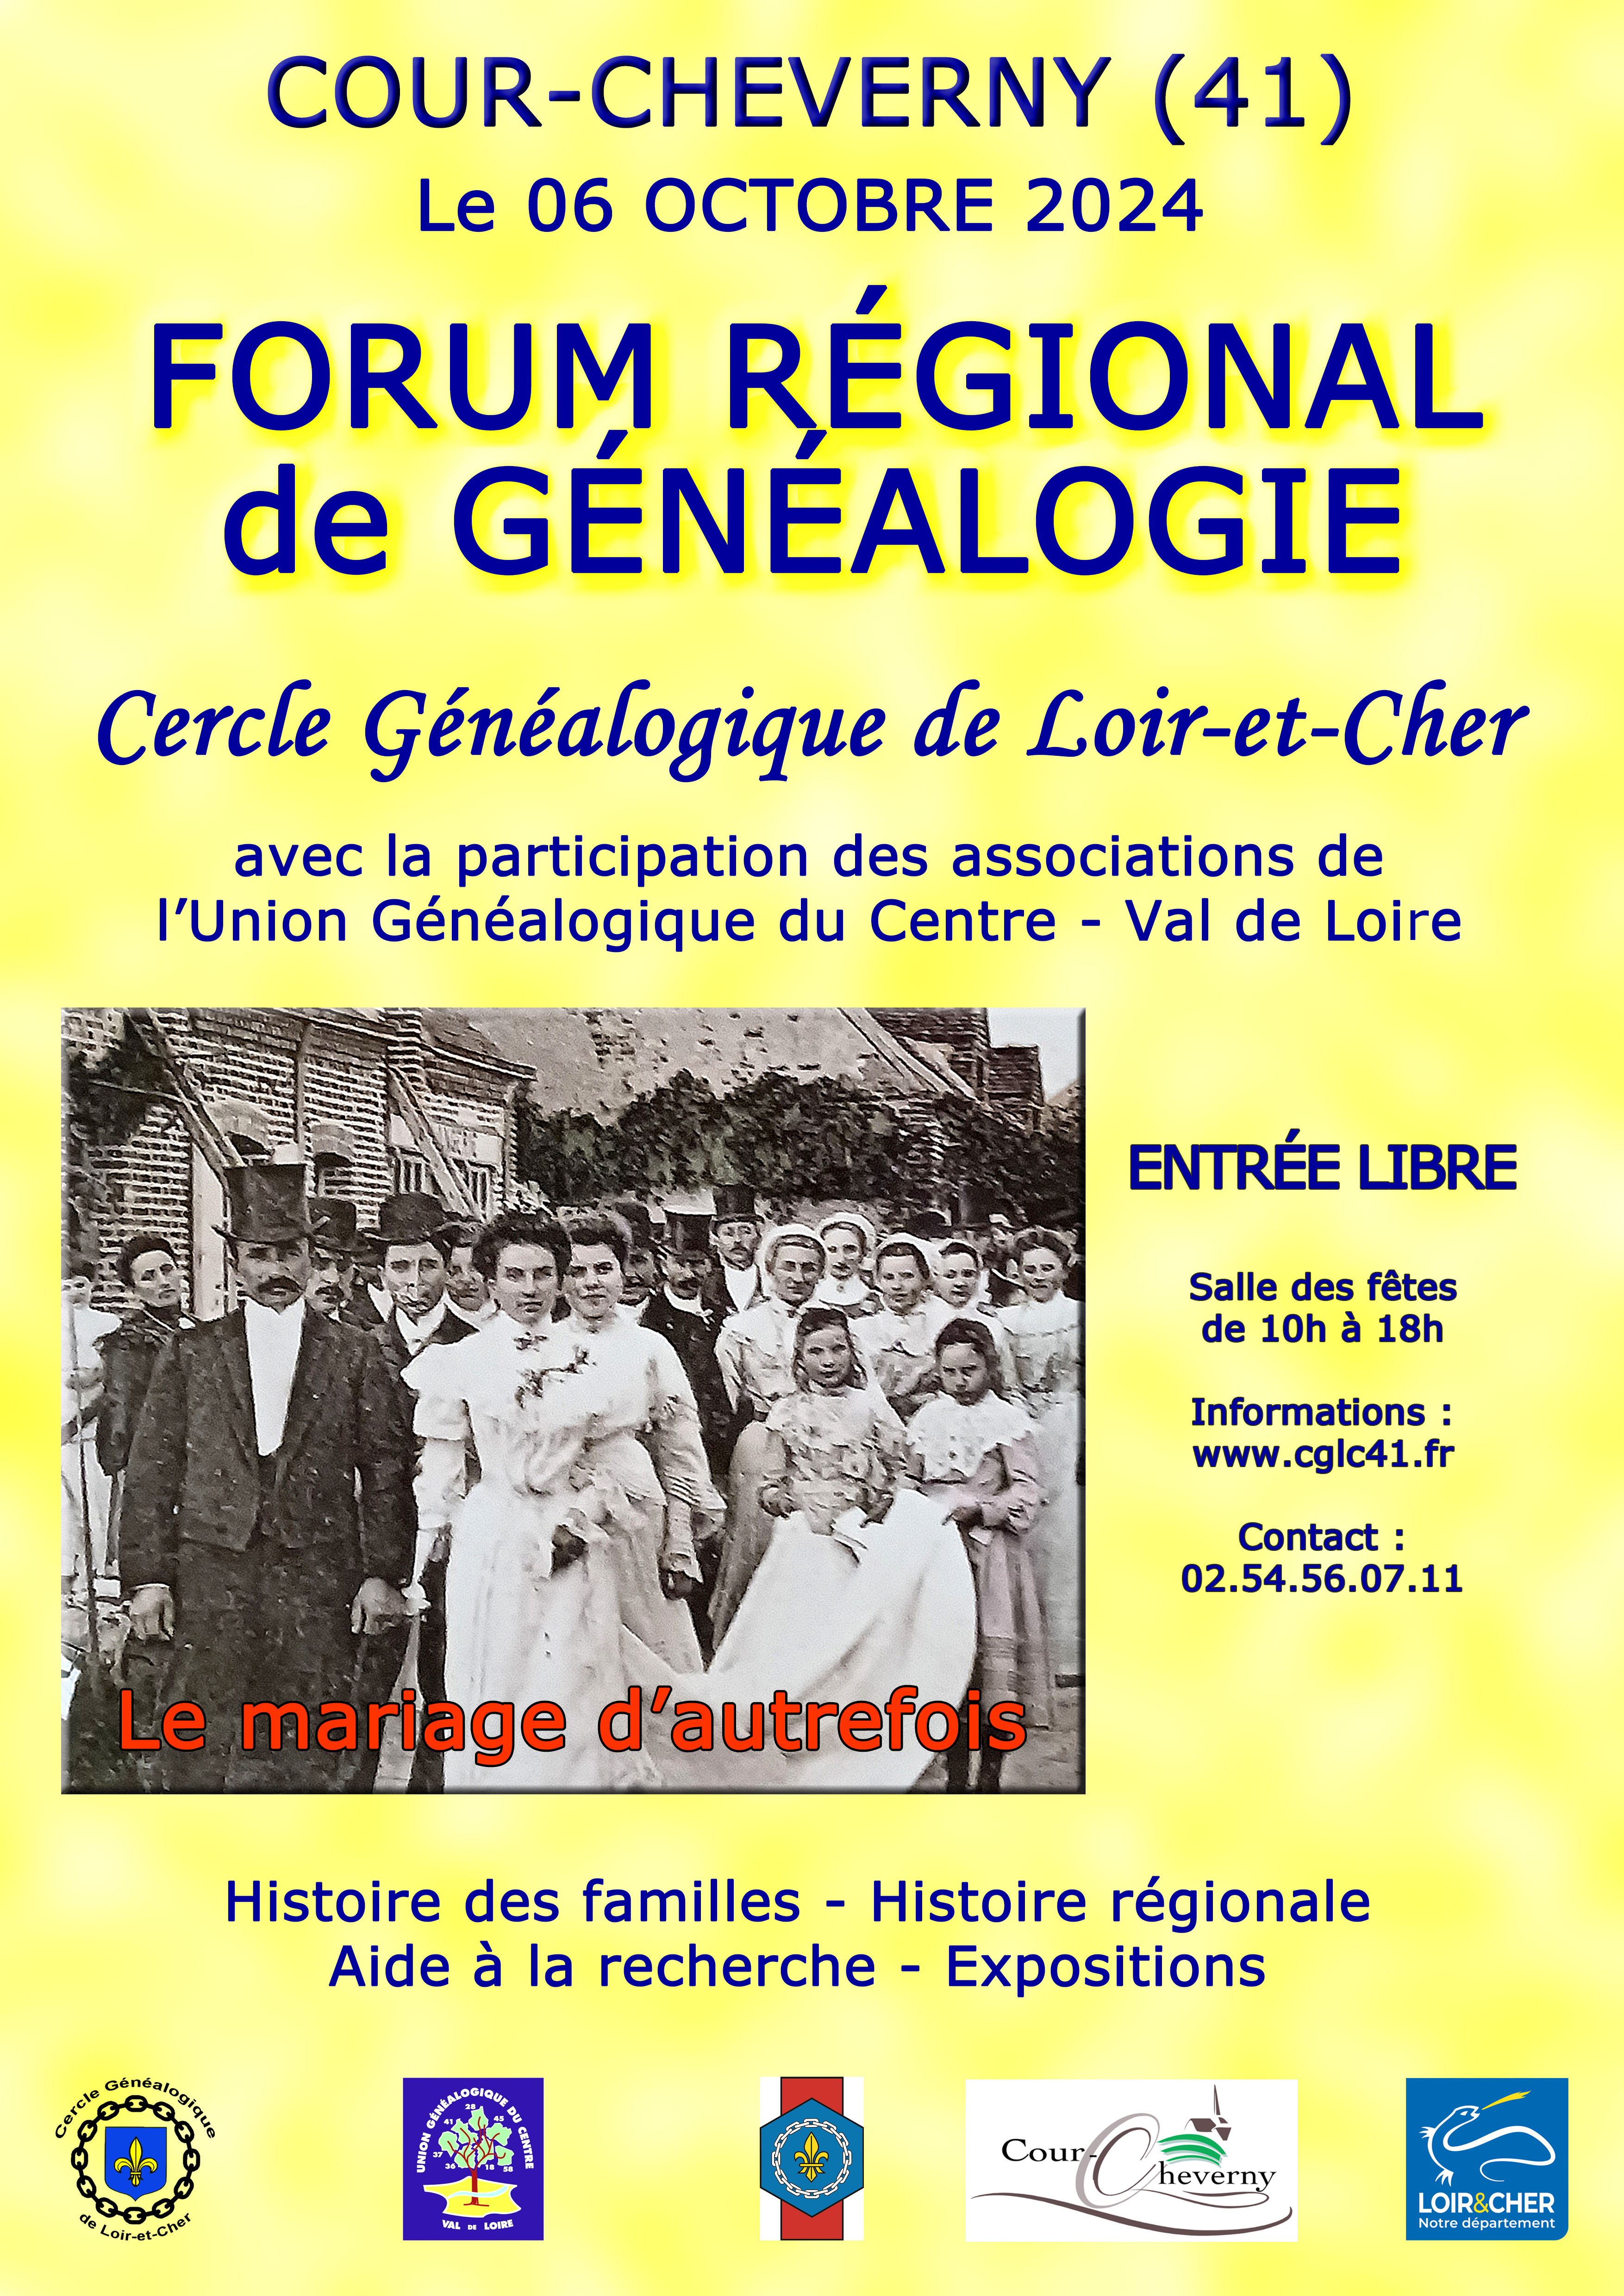 Forum Régional de Généalogie - Cour-Cheverny